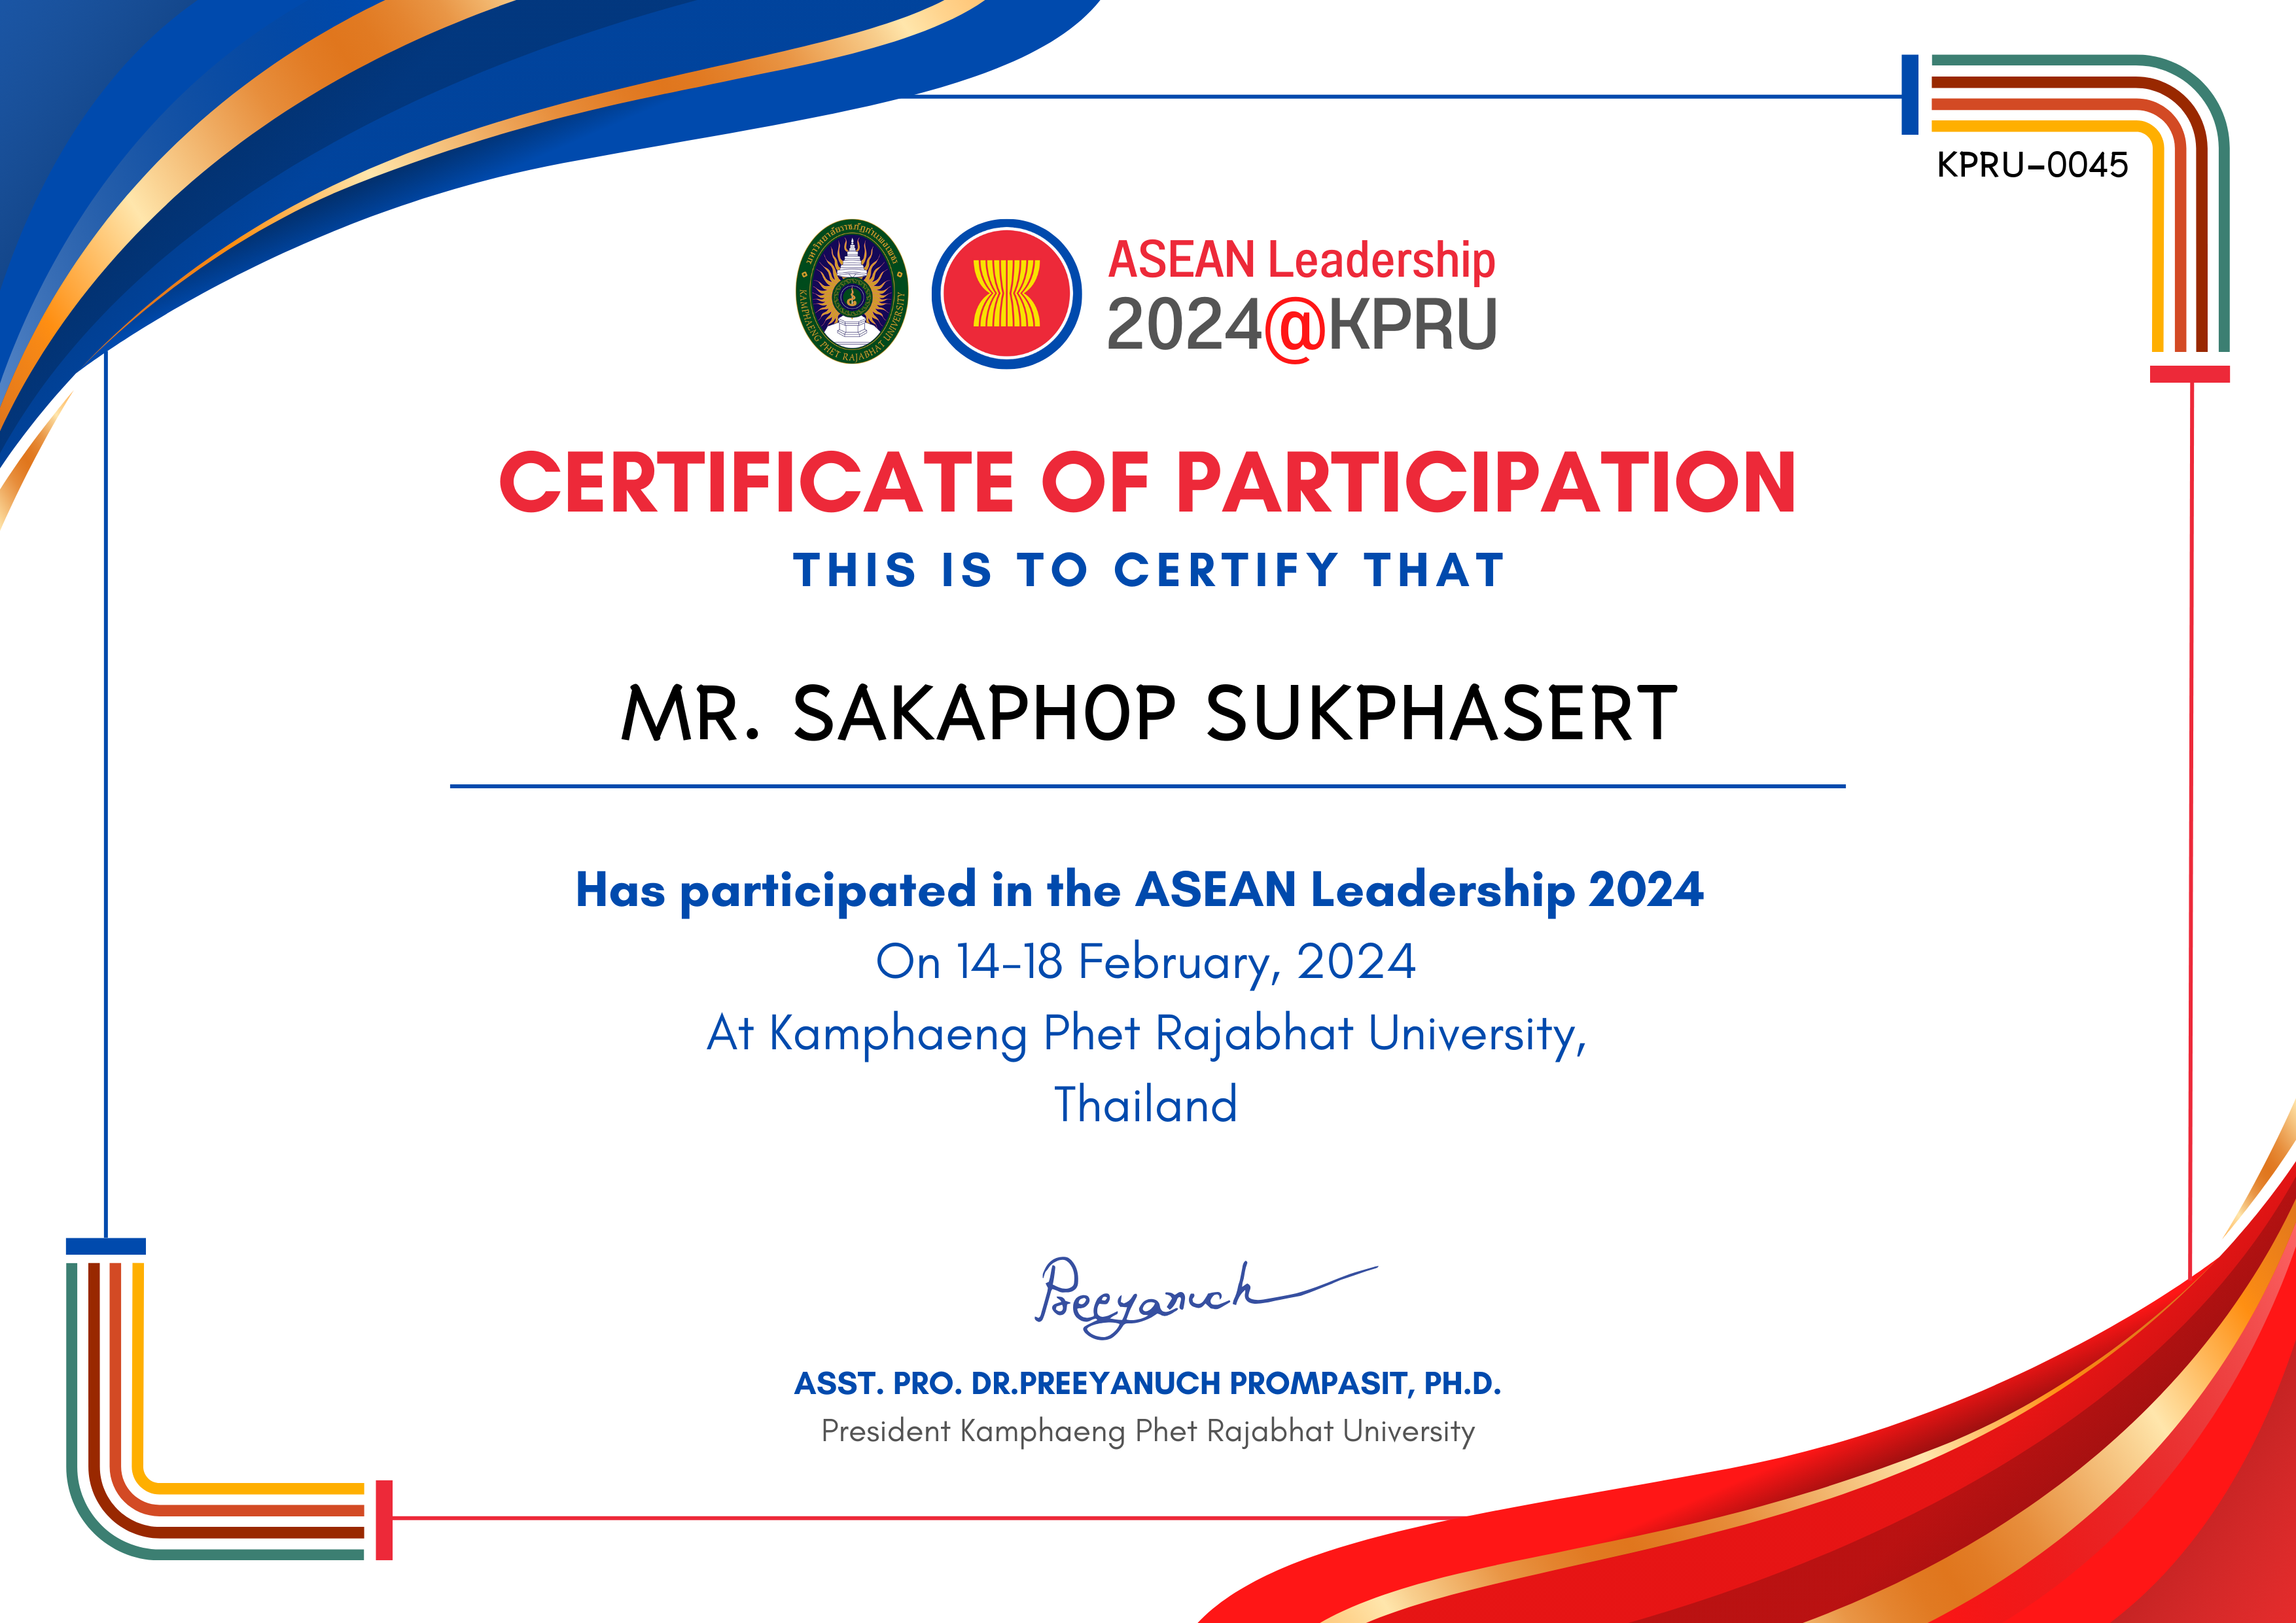 เกียรติบัตร ASEAN Leadership 2024-participated ของ MR. SAKAPHOP SUKPHASERT